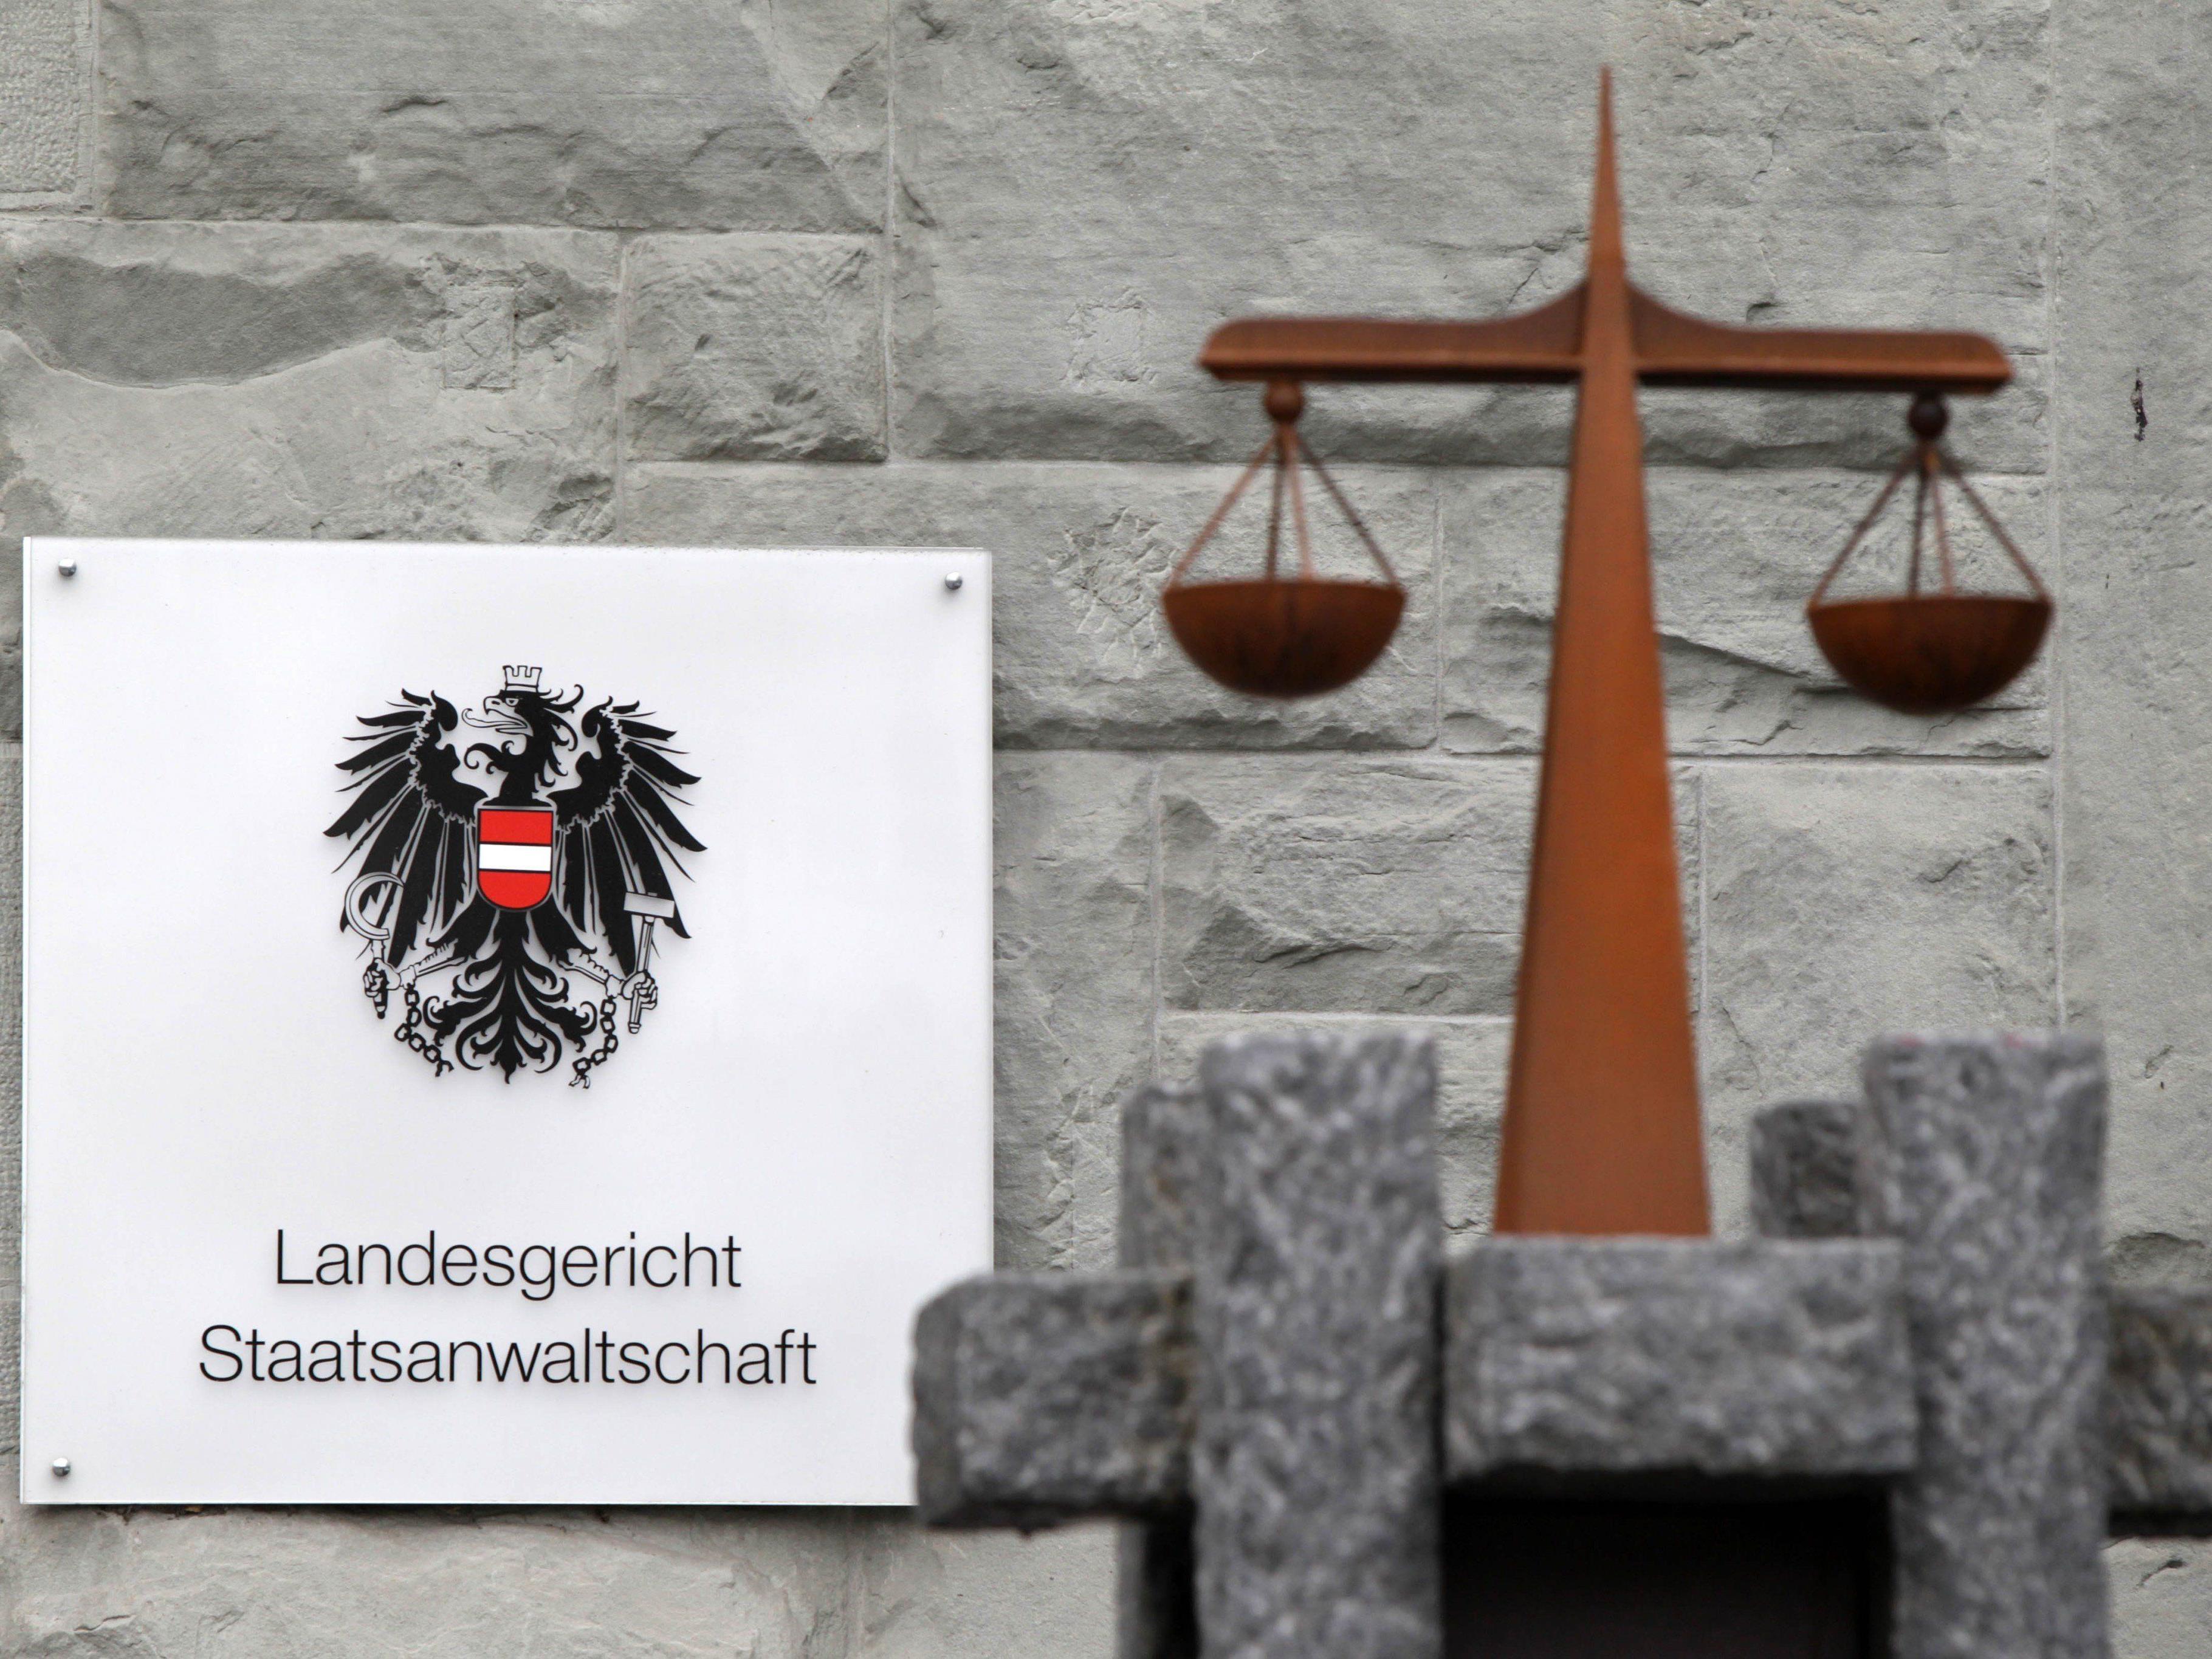 Zwei Vorarlberger Schlepper wurden am Landesgericht verurteilt.